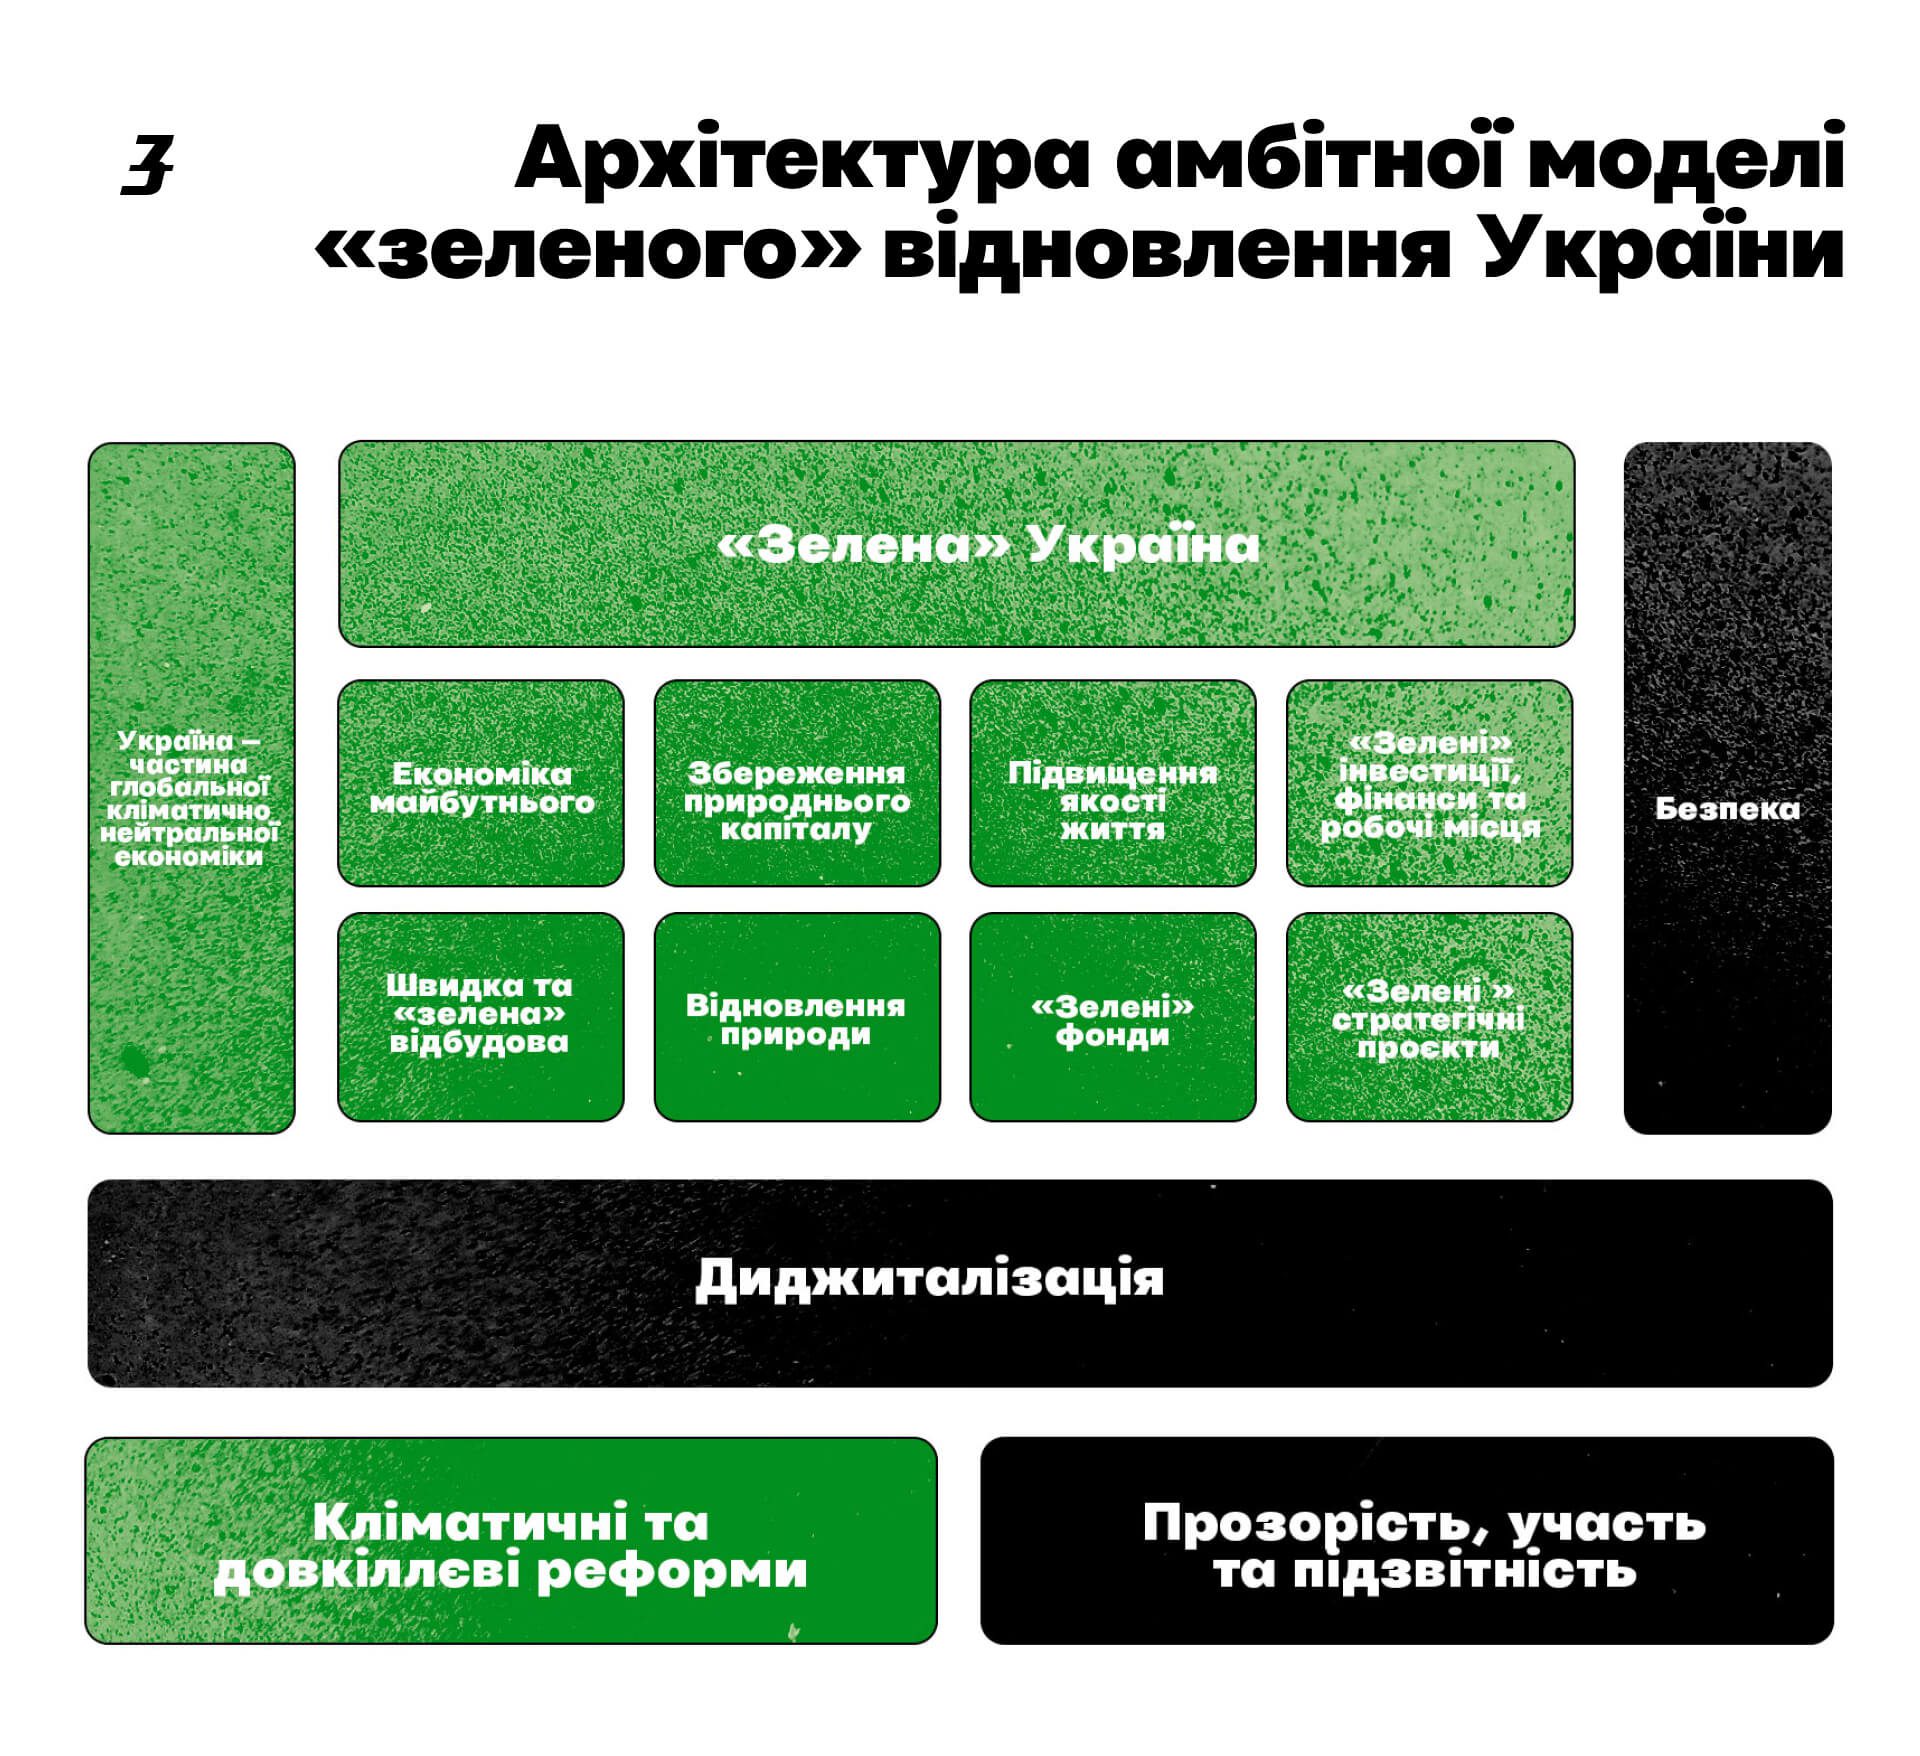 архітектура амбітної моделі зеленого відновлення України